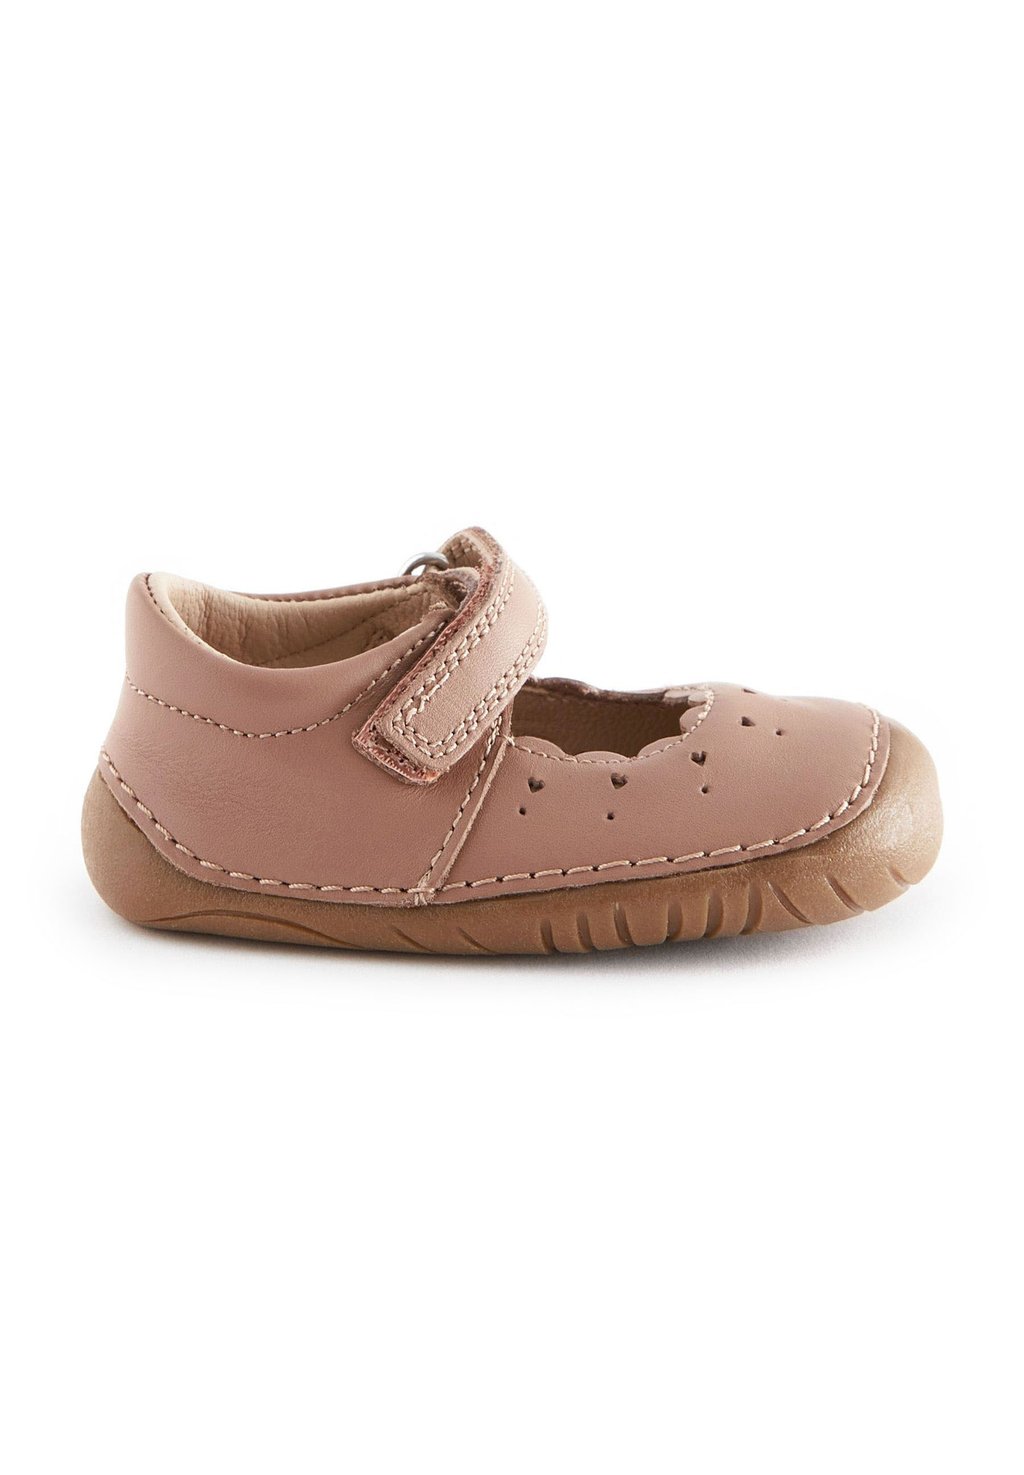 Туфли для первых шагов Crawler Mary Jane Wide Fit G Next, цвет tan brown leather обувь для первых шагов chelsea next цвет tan brown